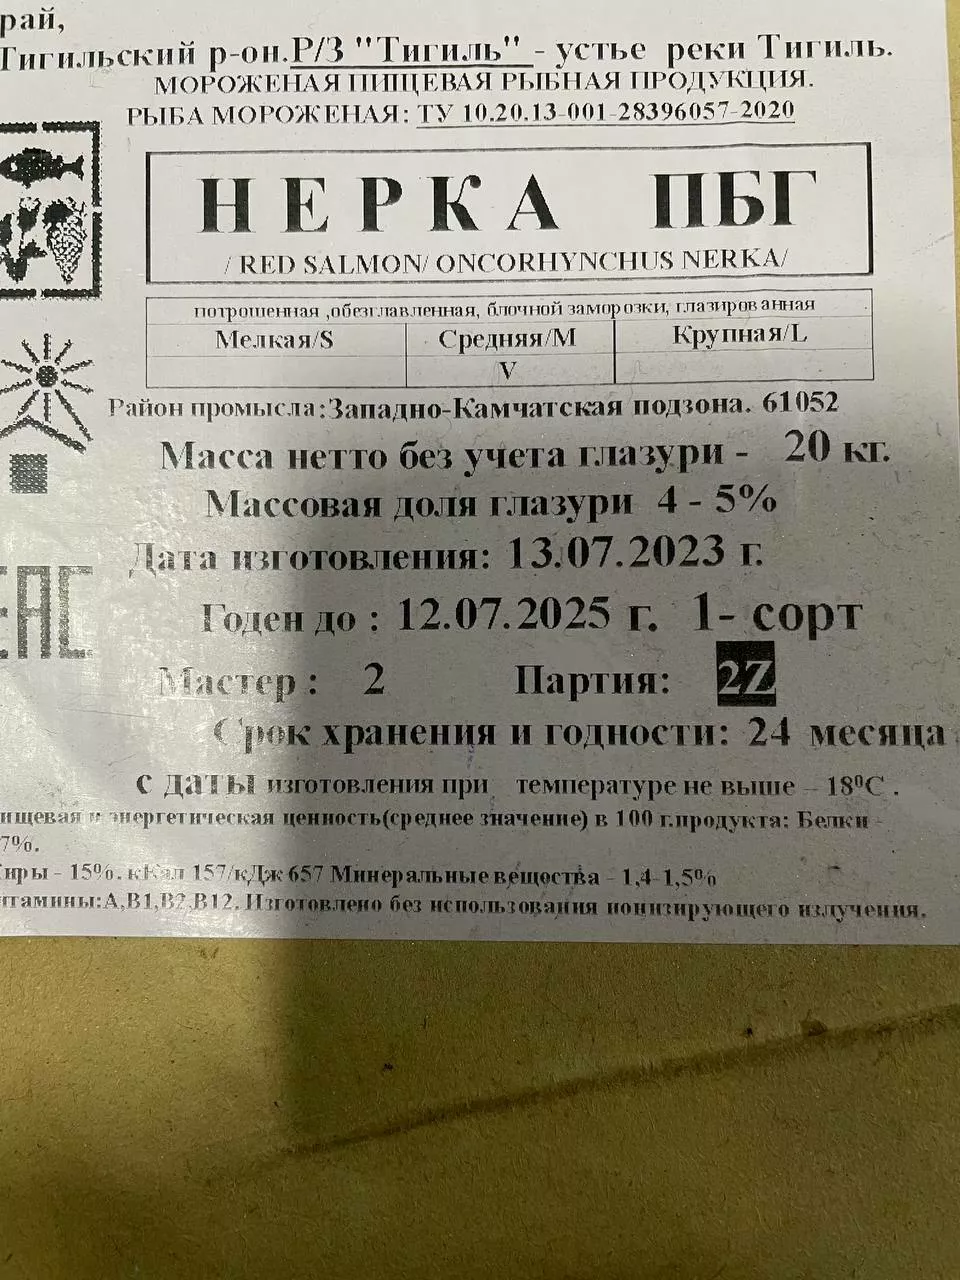 нерка пбг 1 сорт вылов 2023 в Санкт-Петербурге 2